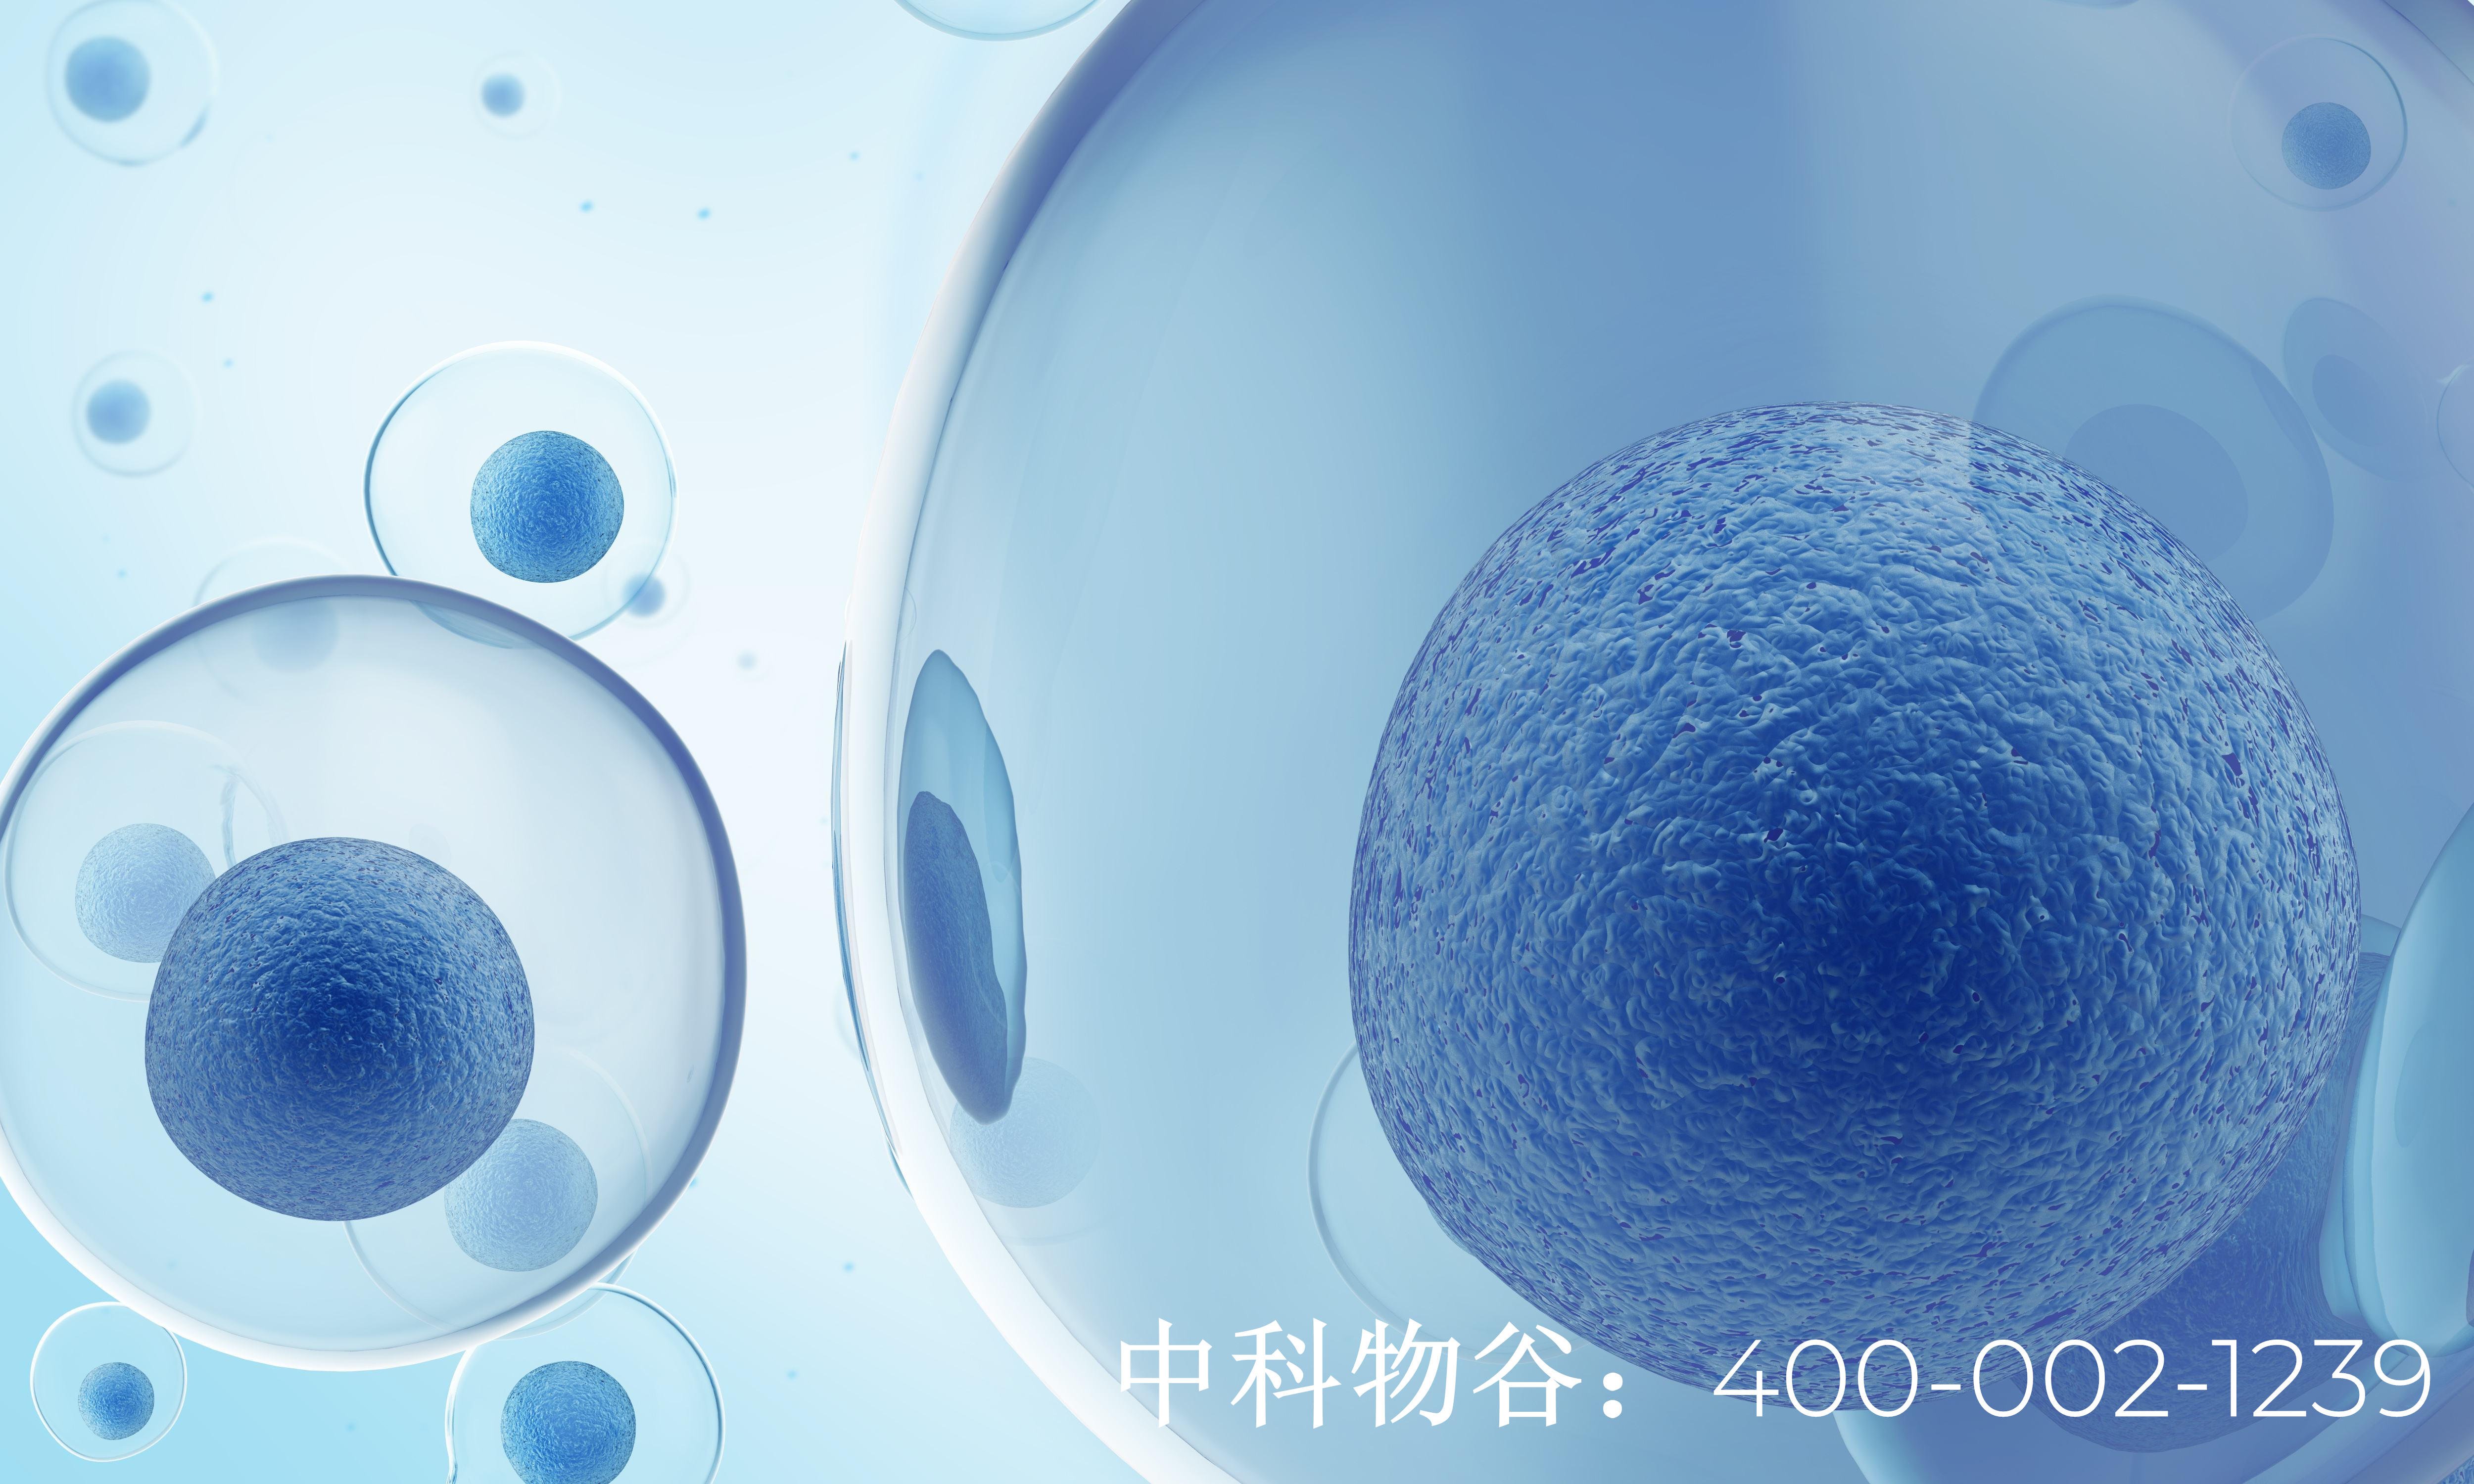 上海细胞治疗胰腺癌是靠谱的吗